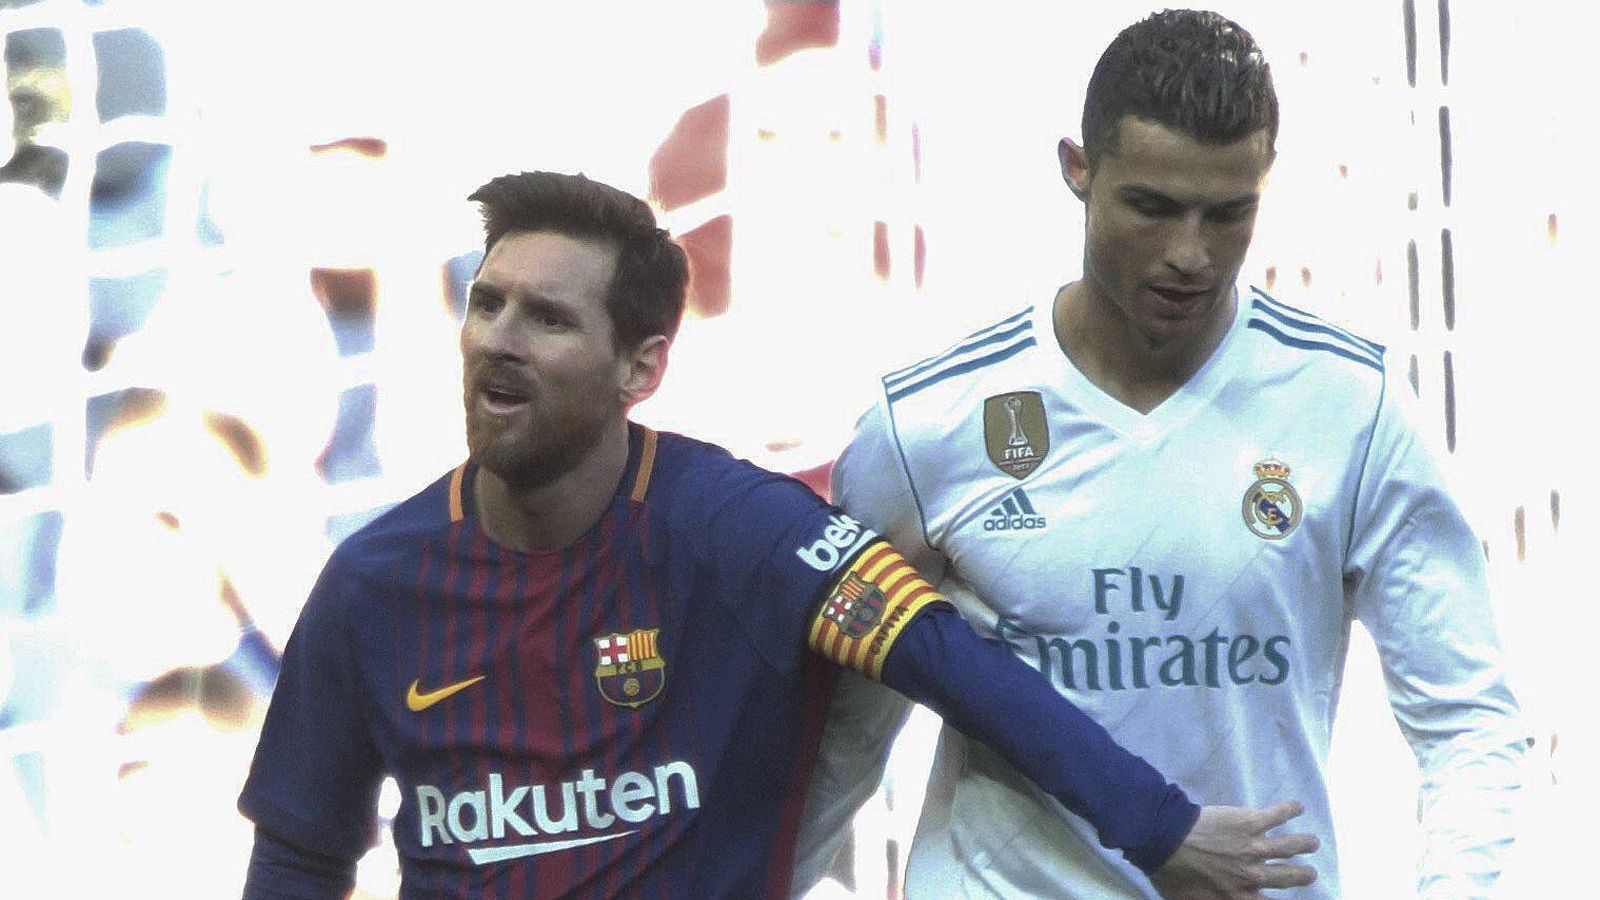 
                <strong>Lionel Messi (FC Barcelona)</strong><br>
                Cristiano Ronaldo und Lionel Messi in einem Team? Beinahe wäre es 2013 wohl dazu bekommen. Das berichtet das Enthüllungsportal "Football Leaks". Demnach soll Real Madrid im Juni 2013 bereit gewesen sein, die Rekordablösesumme von 250 Millionen Euro (damalige Ausstiegsklausel in Messis Vertrag) für den Argentinier zu bezahlen und somit CR7 und Messi einem Team zu vereinen. Den "Football Leaks"-Dokumenten zufolge wollten die Madrilenen Messi mit einem Netto-Jahresgehalt von 23 Millionen Euro in Spaniens Hauptstadt locken. Es soll sogar ein Treffen zwischen Messi und Real-Boss Florentino Perez gegeben haben - stilecht in einem Privatjet! Die Madrilenen kommentierten die Gerüchte um eine angebliche Messi-Verpflichtung im Jahr 2013 als "völlig falsch".
              